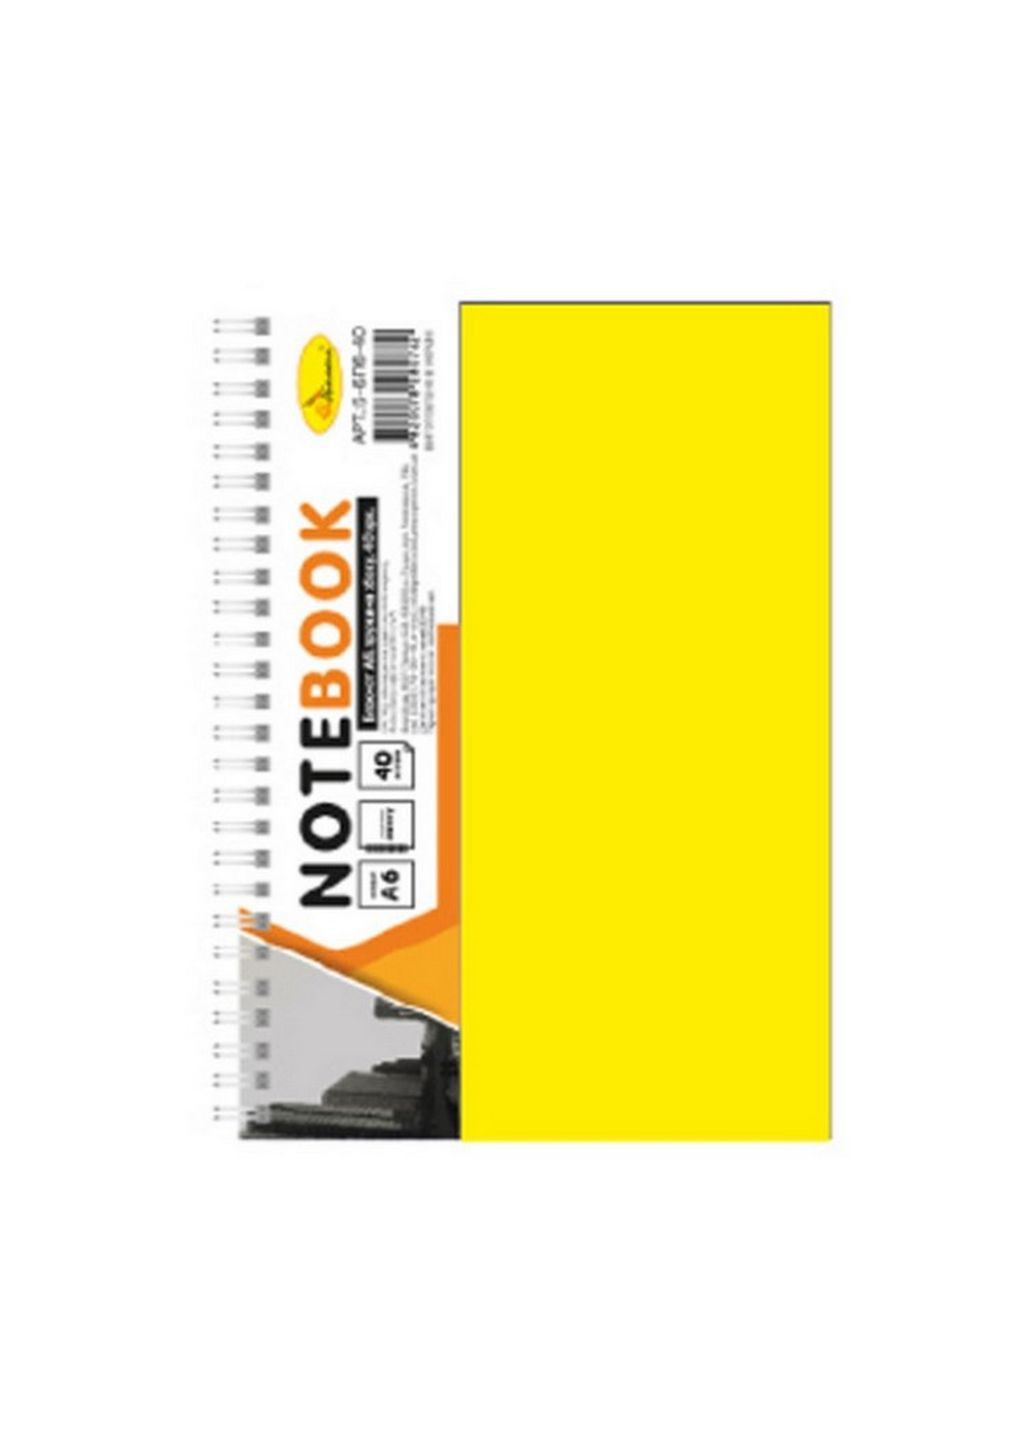 Блокнот А6 Апельсин Б-БП6-40,40 листов (Желтый) Издательство "Апельсин" (261031090)